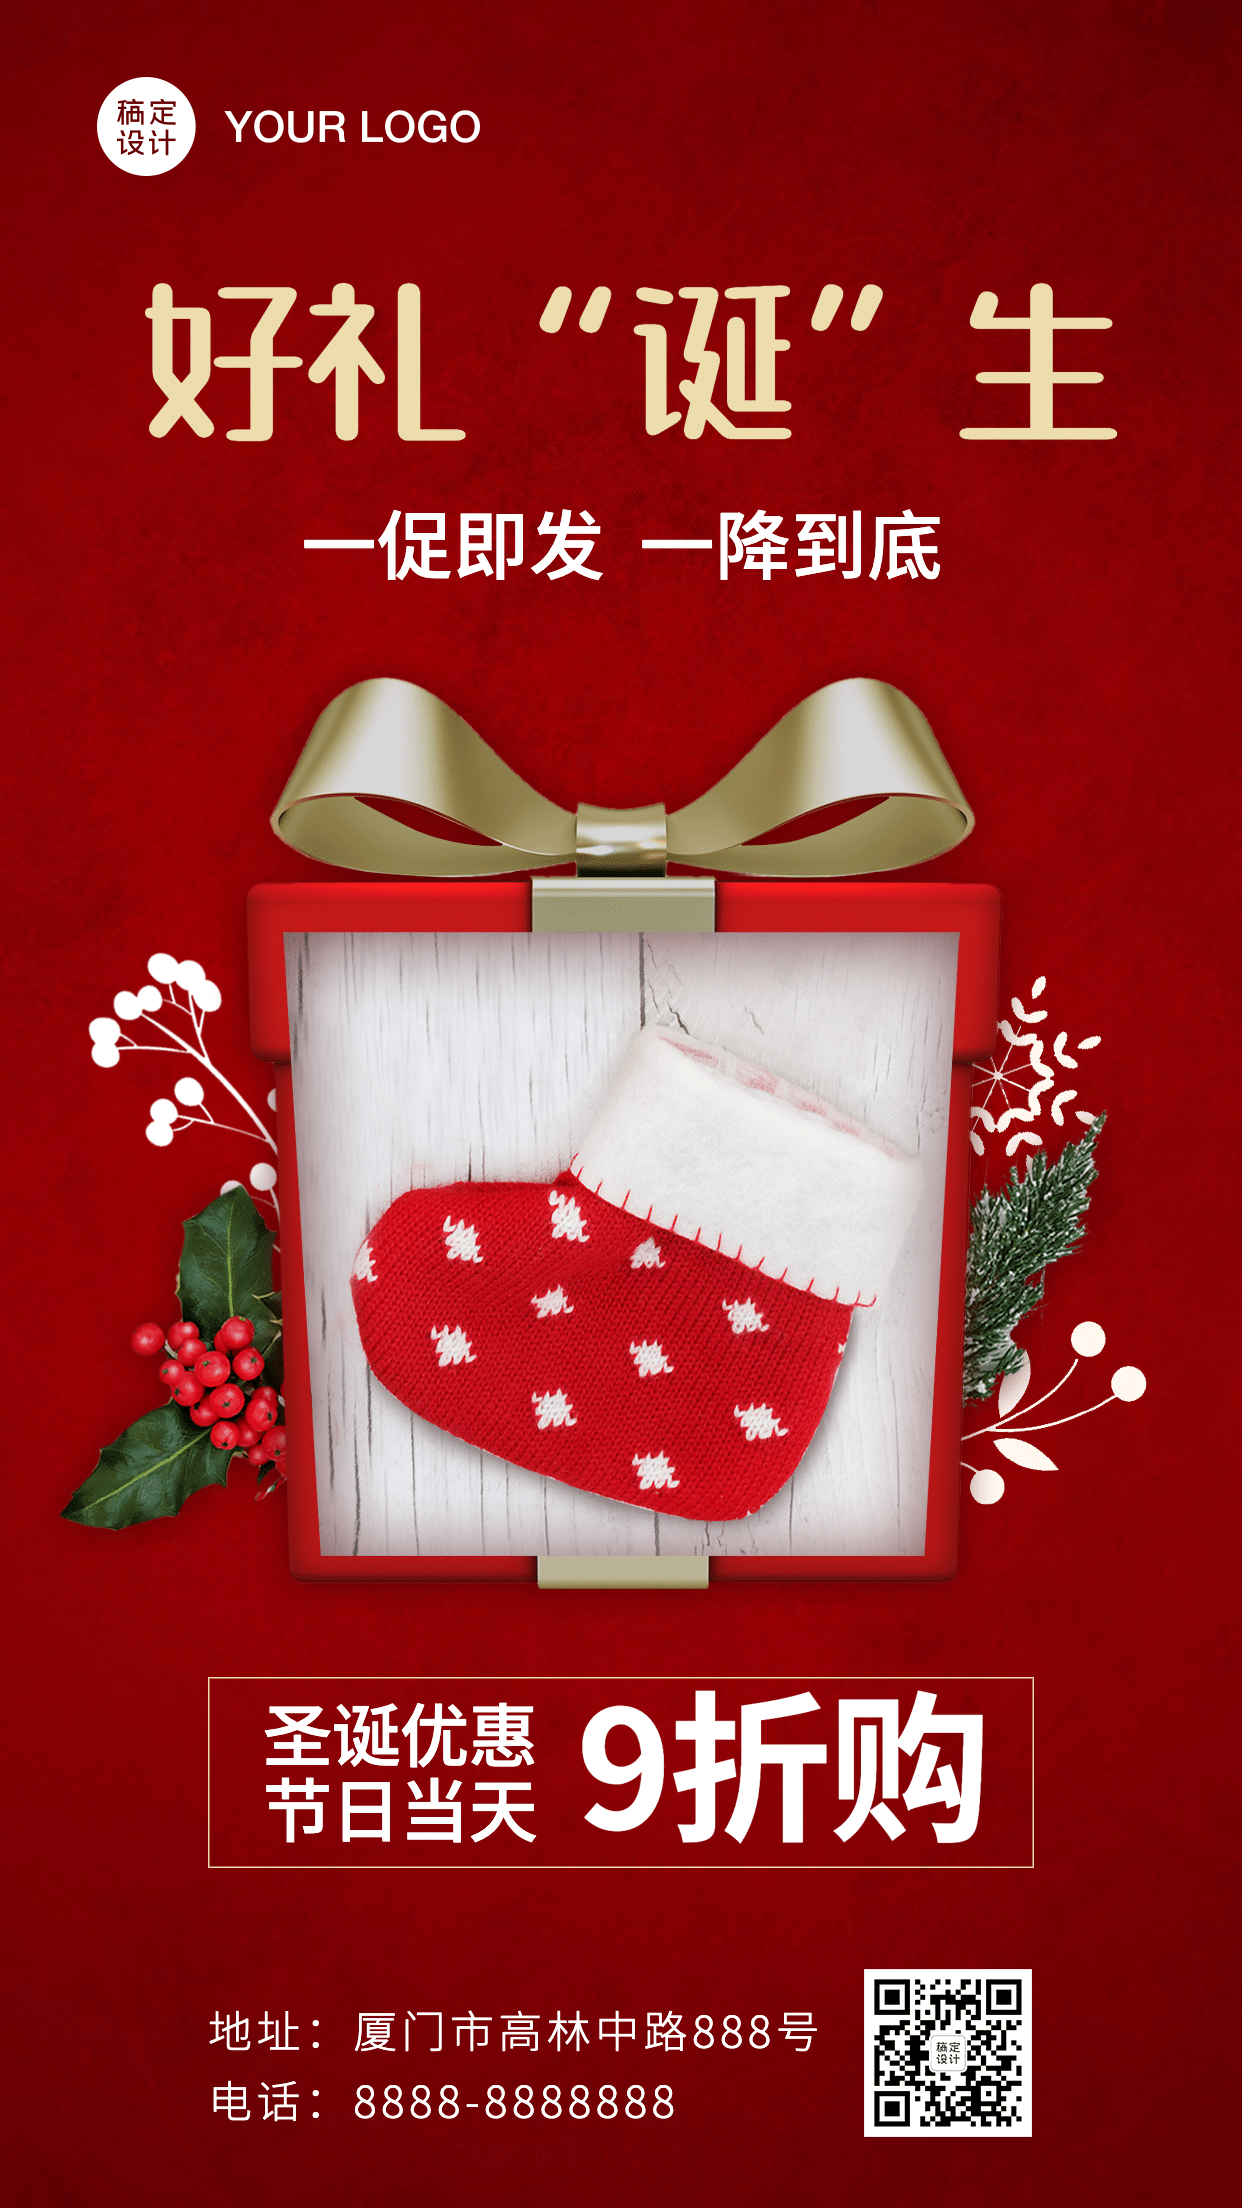 圣诞节产品活动福利促销手机海报